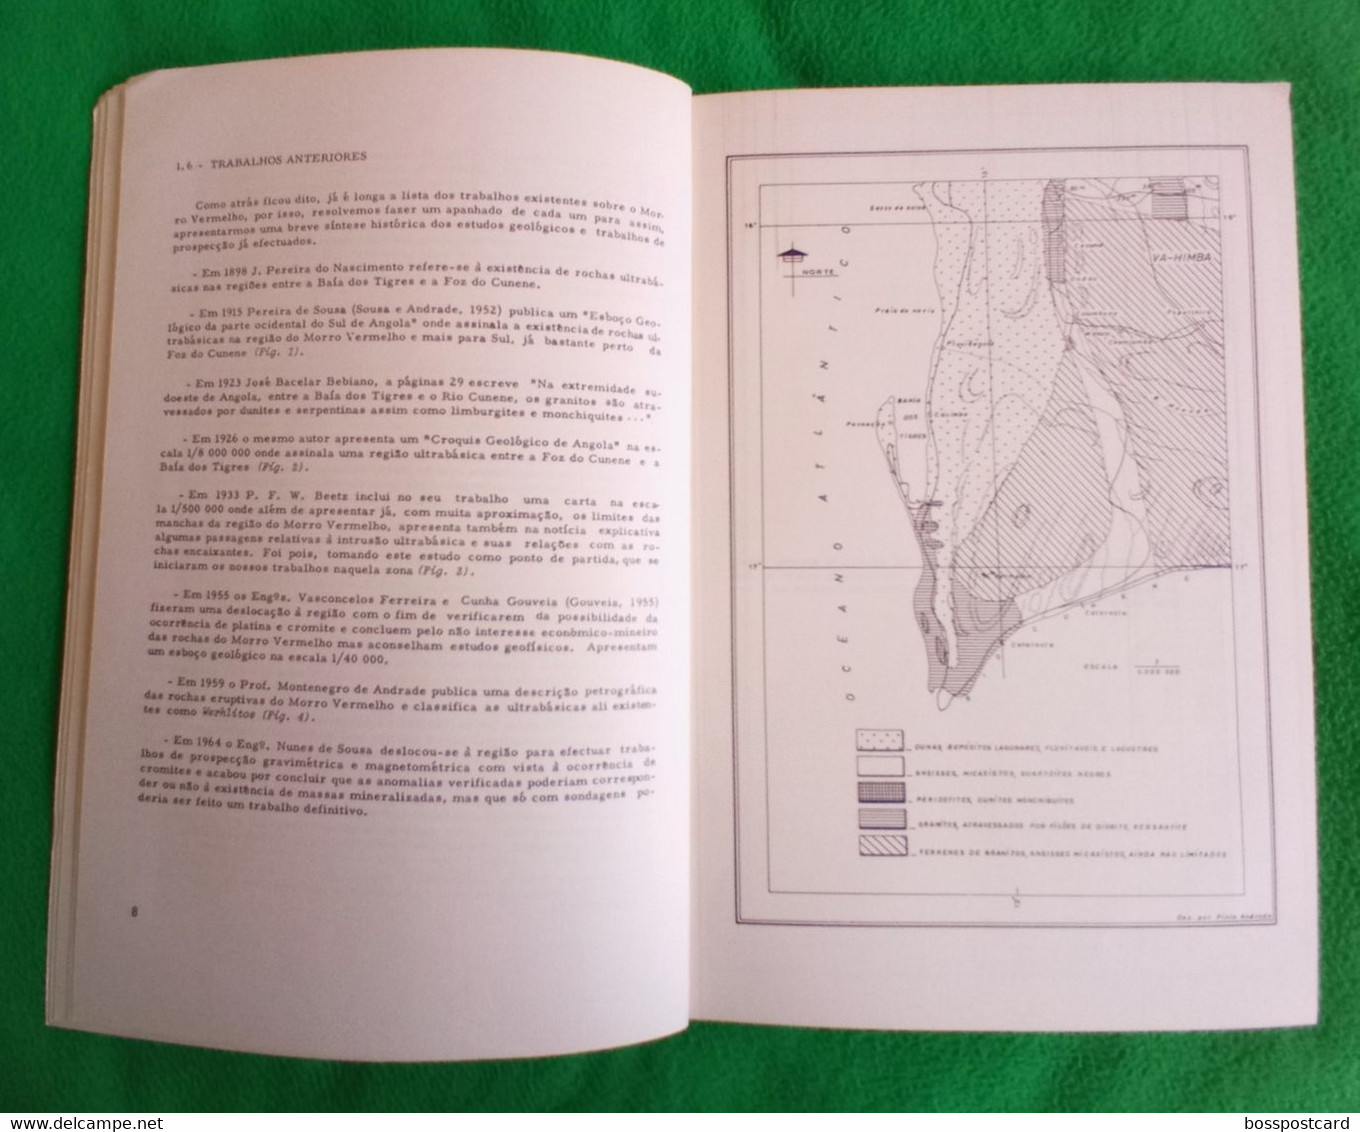 Angola - Nota Prévia Sobre A Geologia Da Região Do Morro Vermelho (Baía Dos Tigres), 1970 - Minas - Mines - Portugal - Andere Pläne